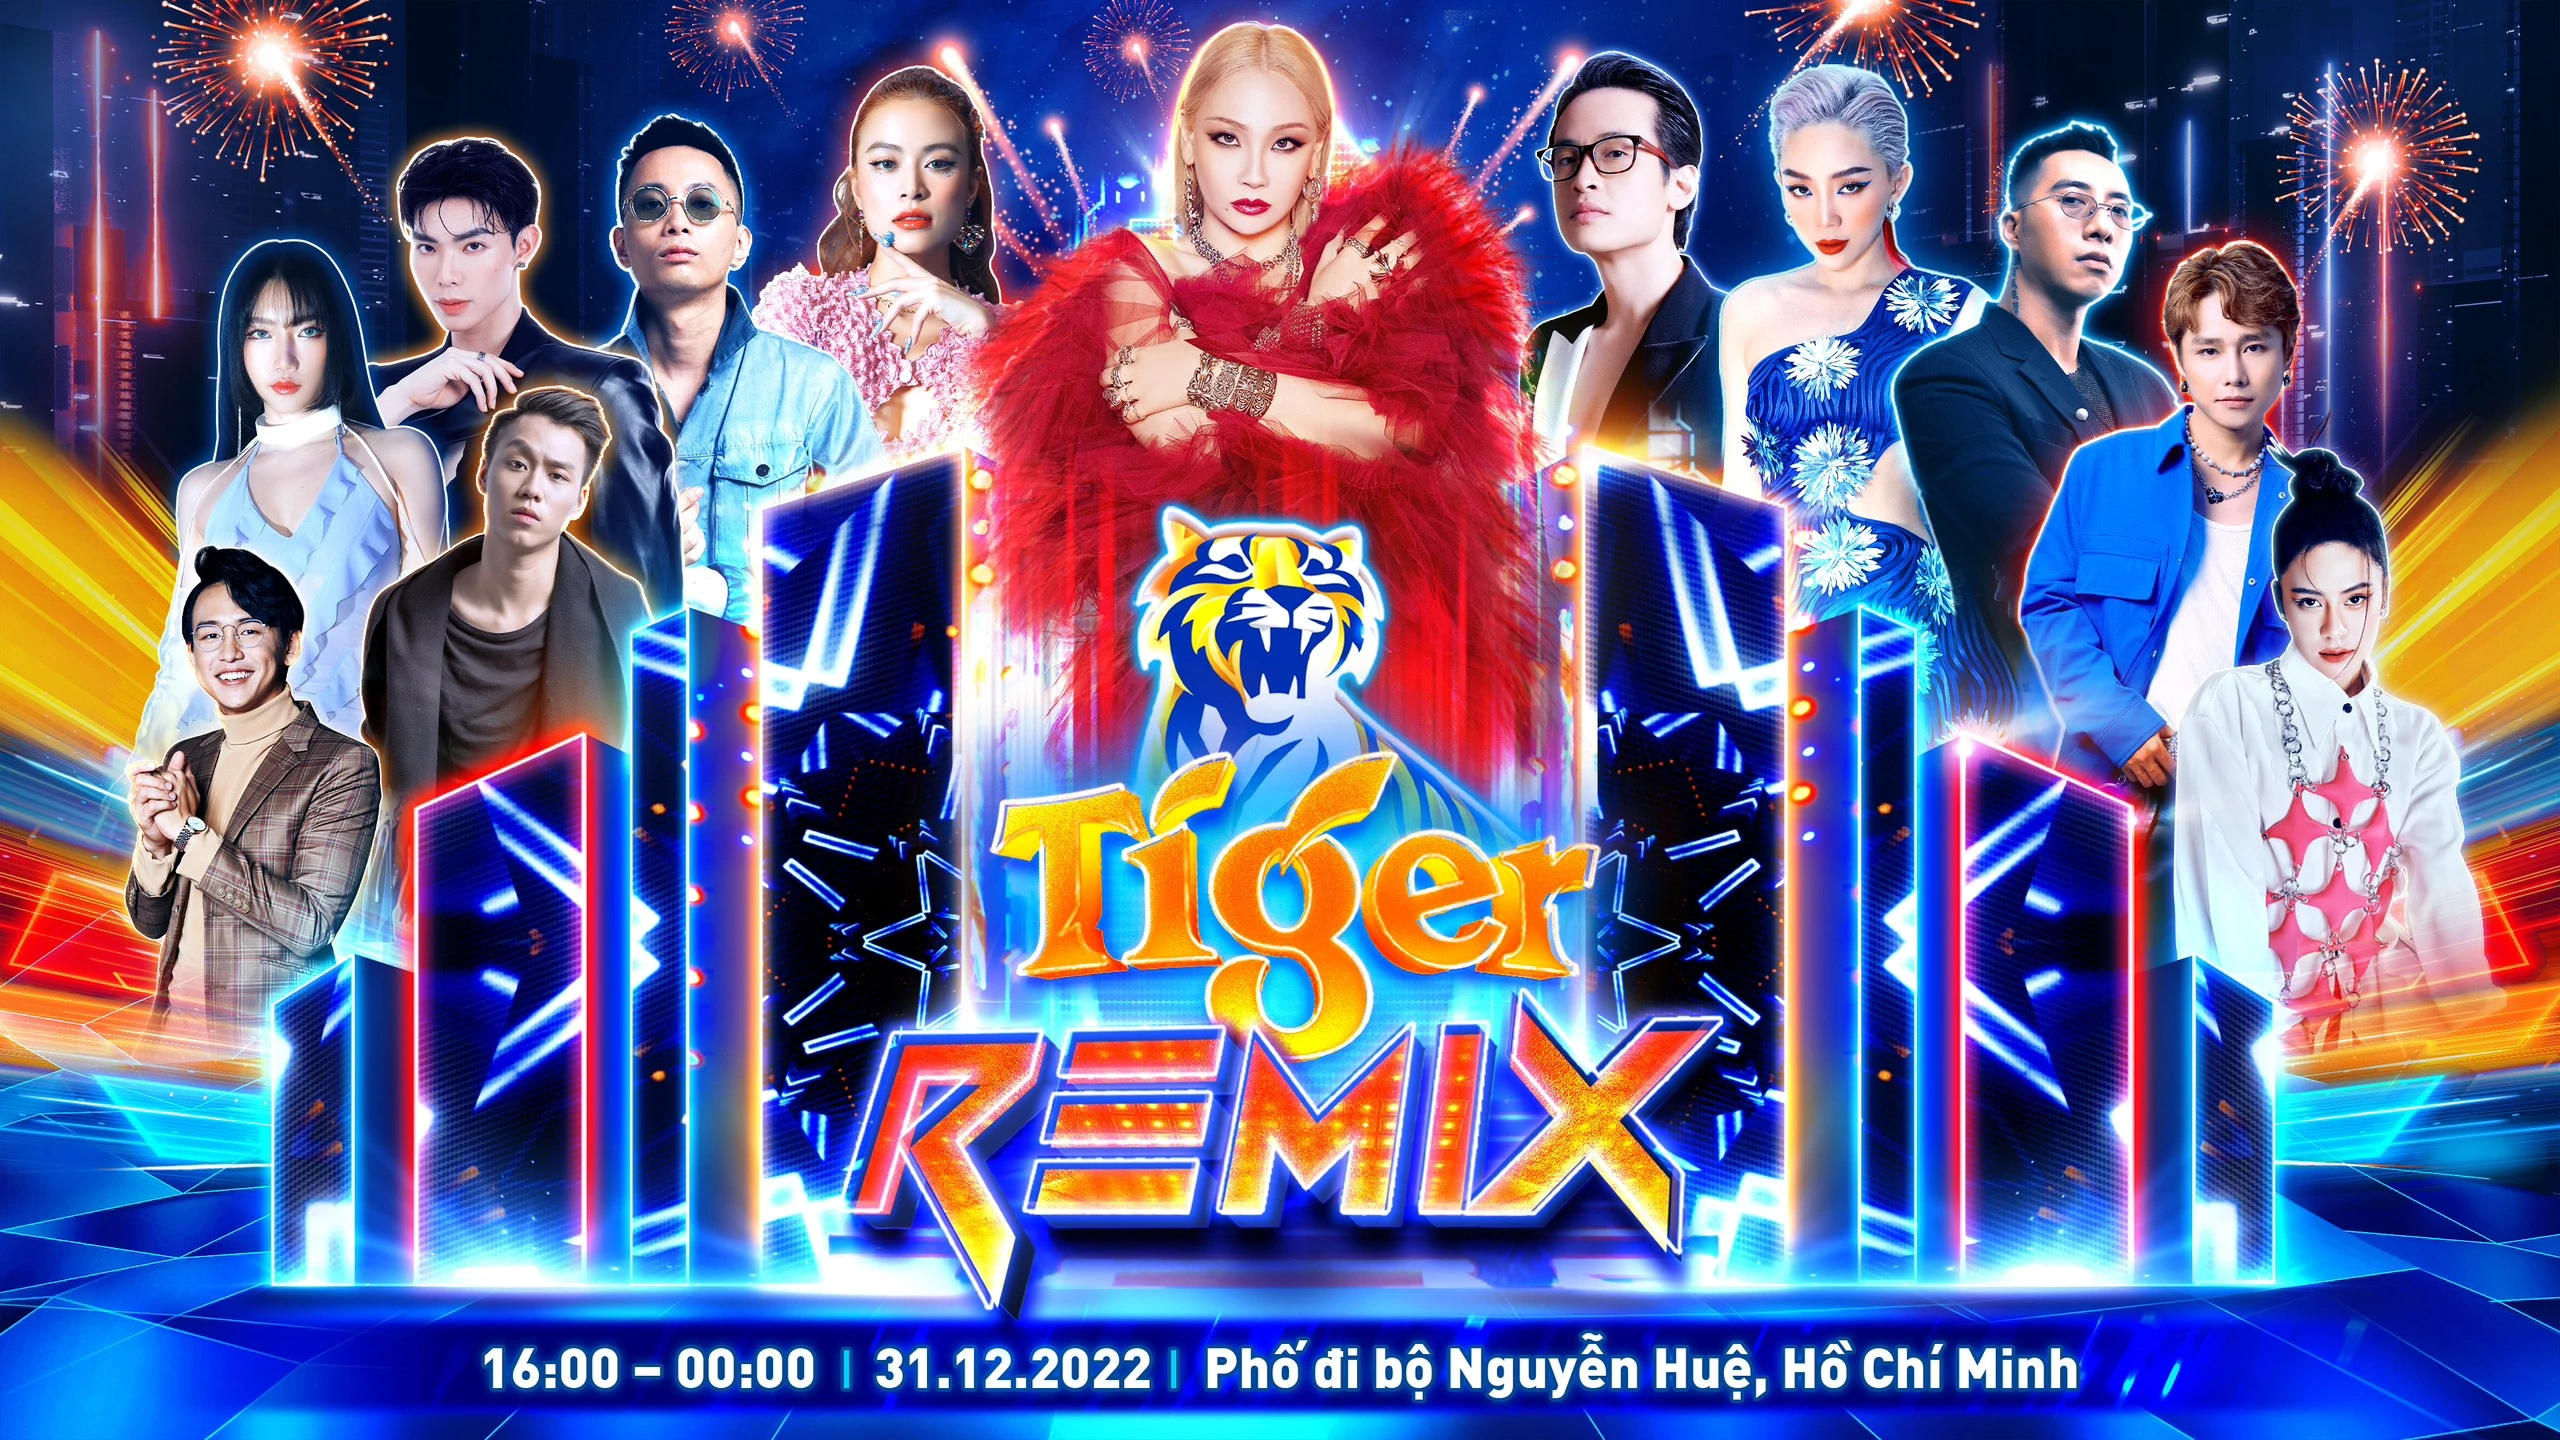 CL - Nghệ sĩ hàng đầu Châu Á sẽ trình diễn tại đại nhạc hội Tiger Remix 2023 Thành Phố Hồ Chí Minh